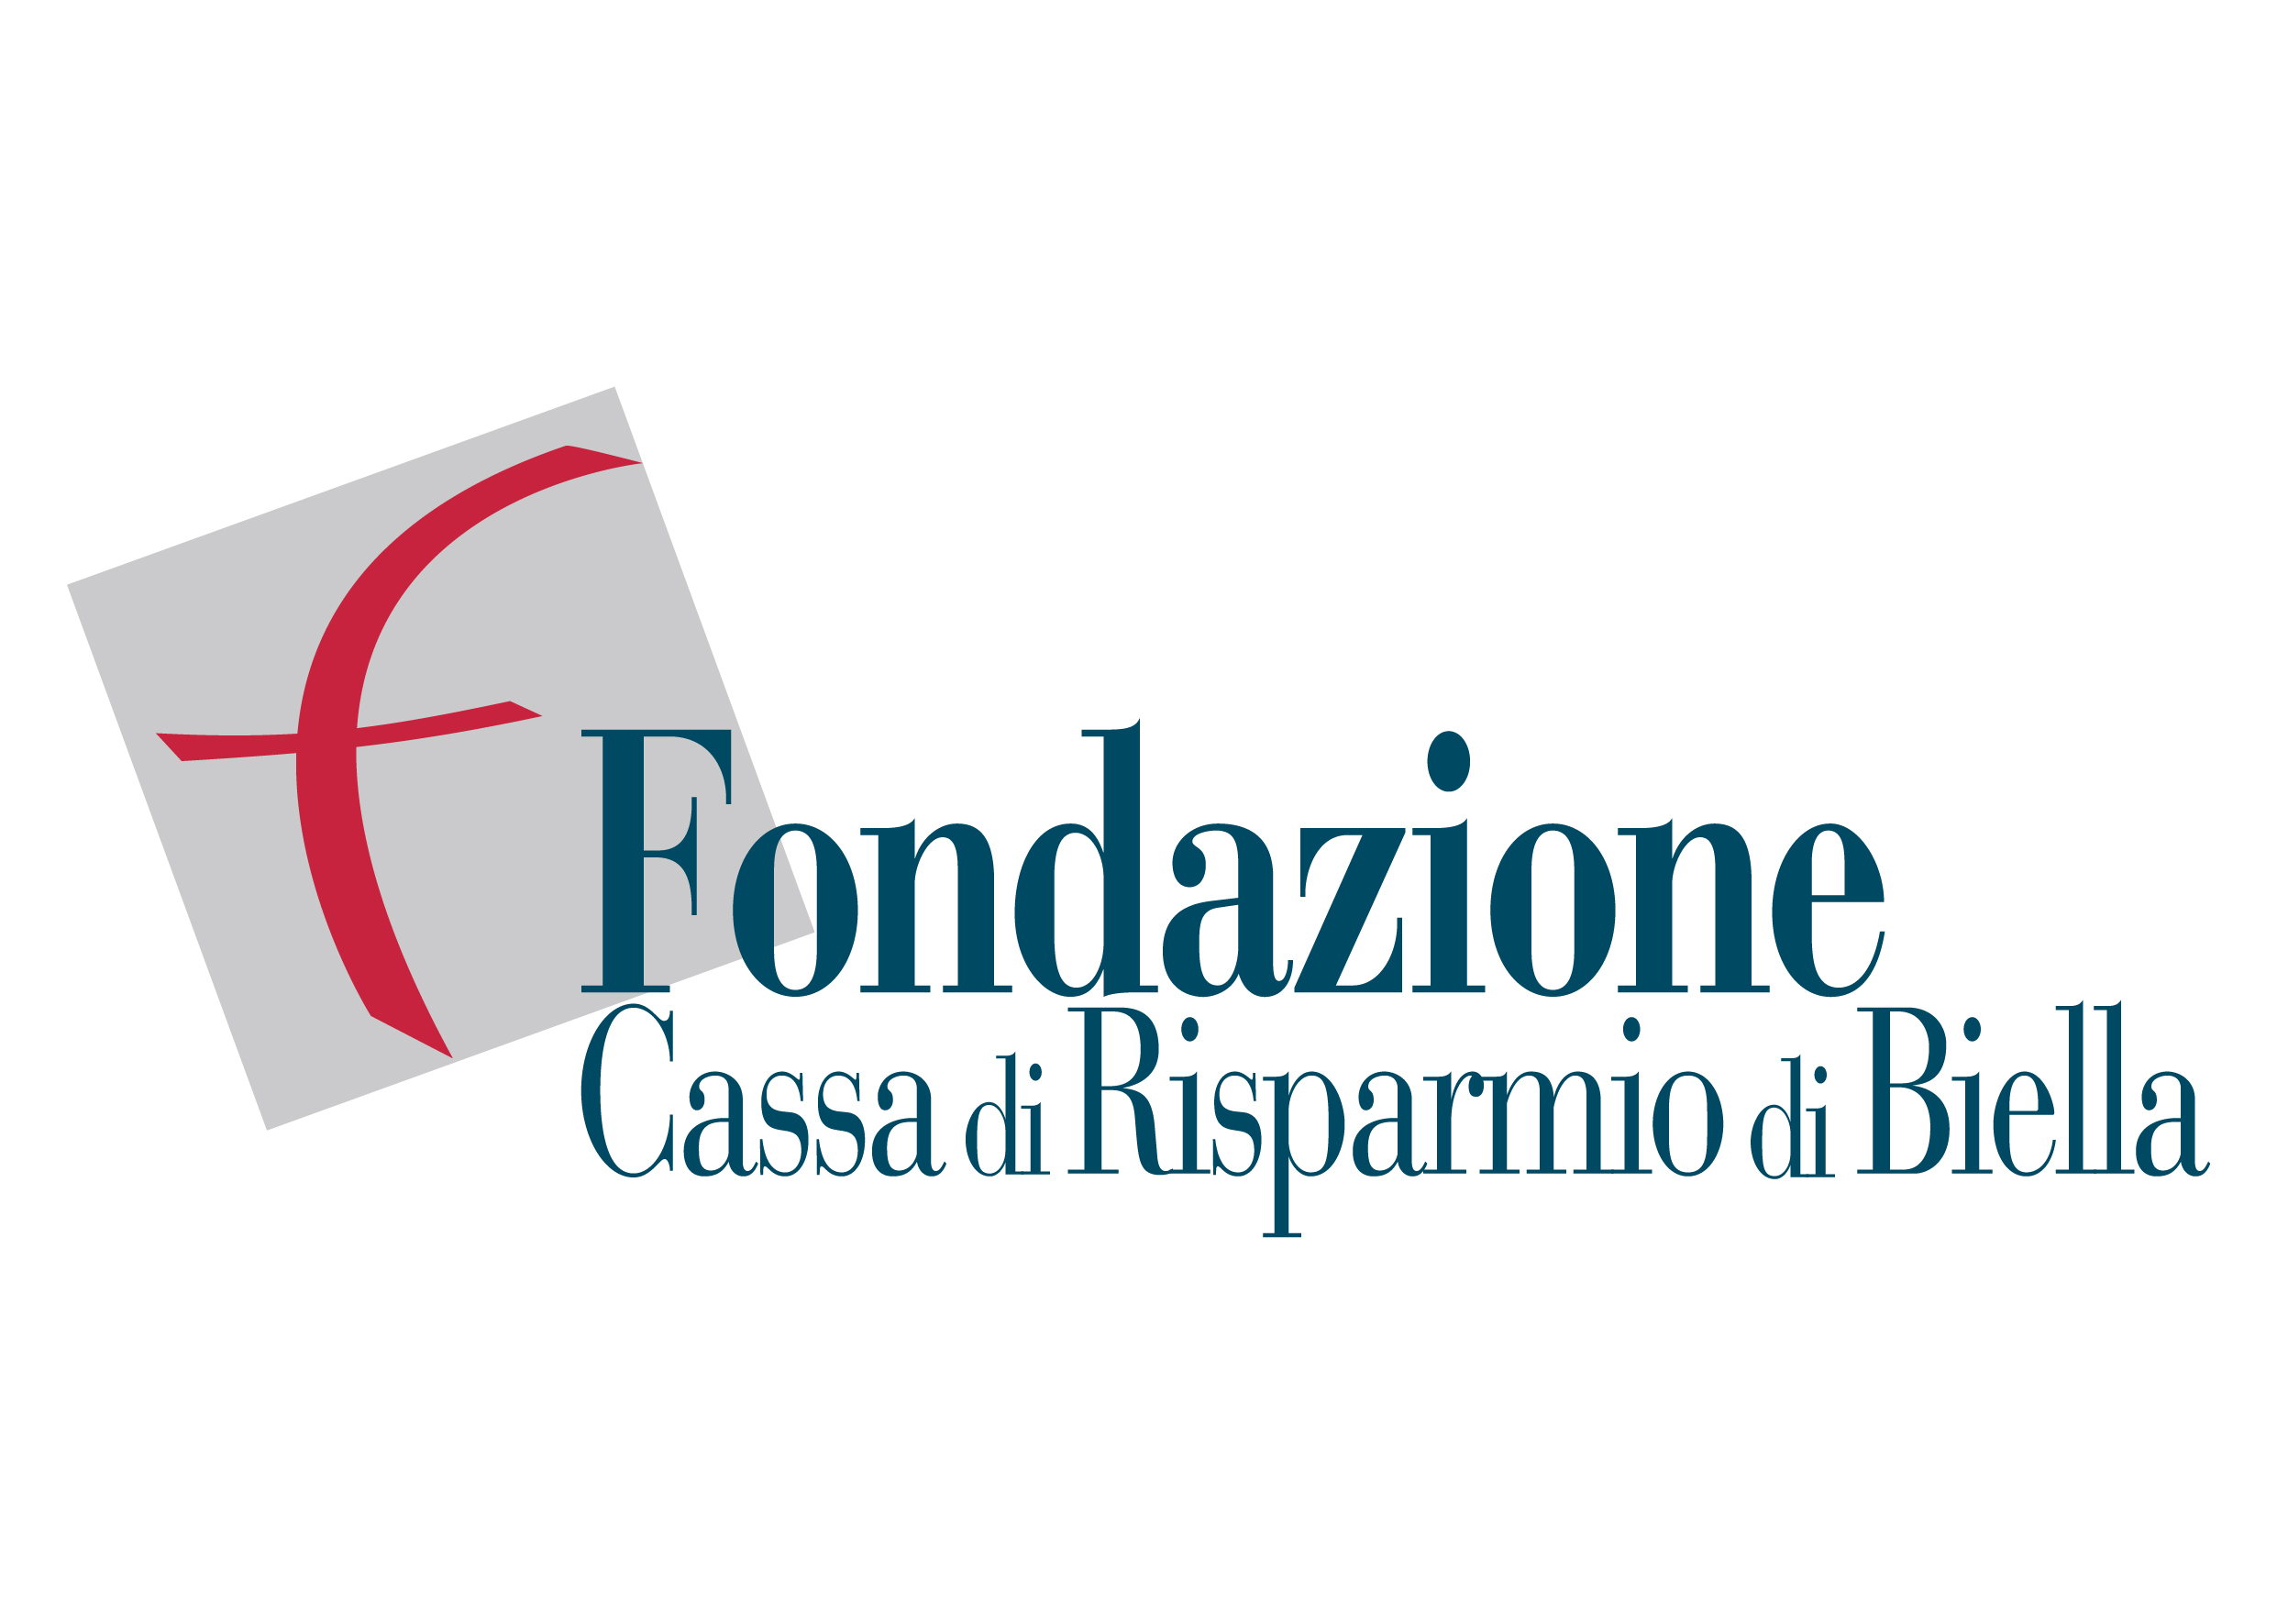 Fondazione Cassa di Risparmio - Sponsor - Reload Soundfestival